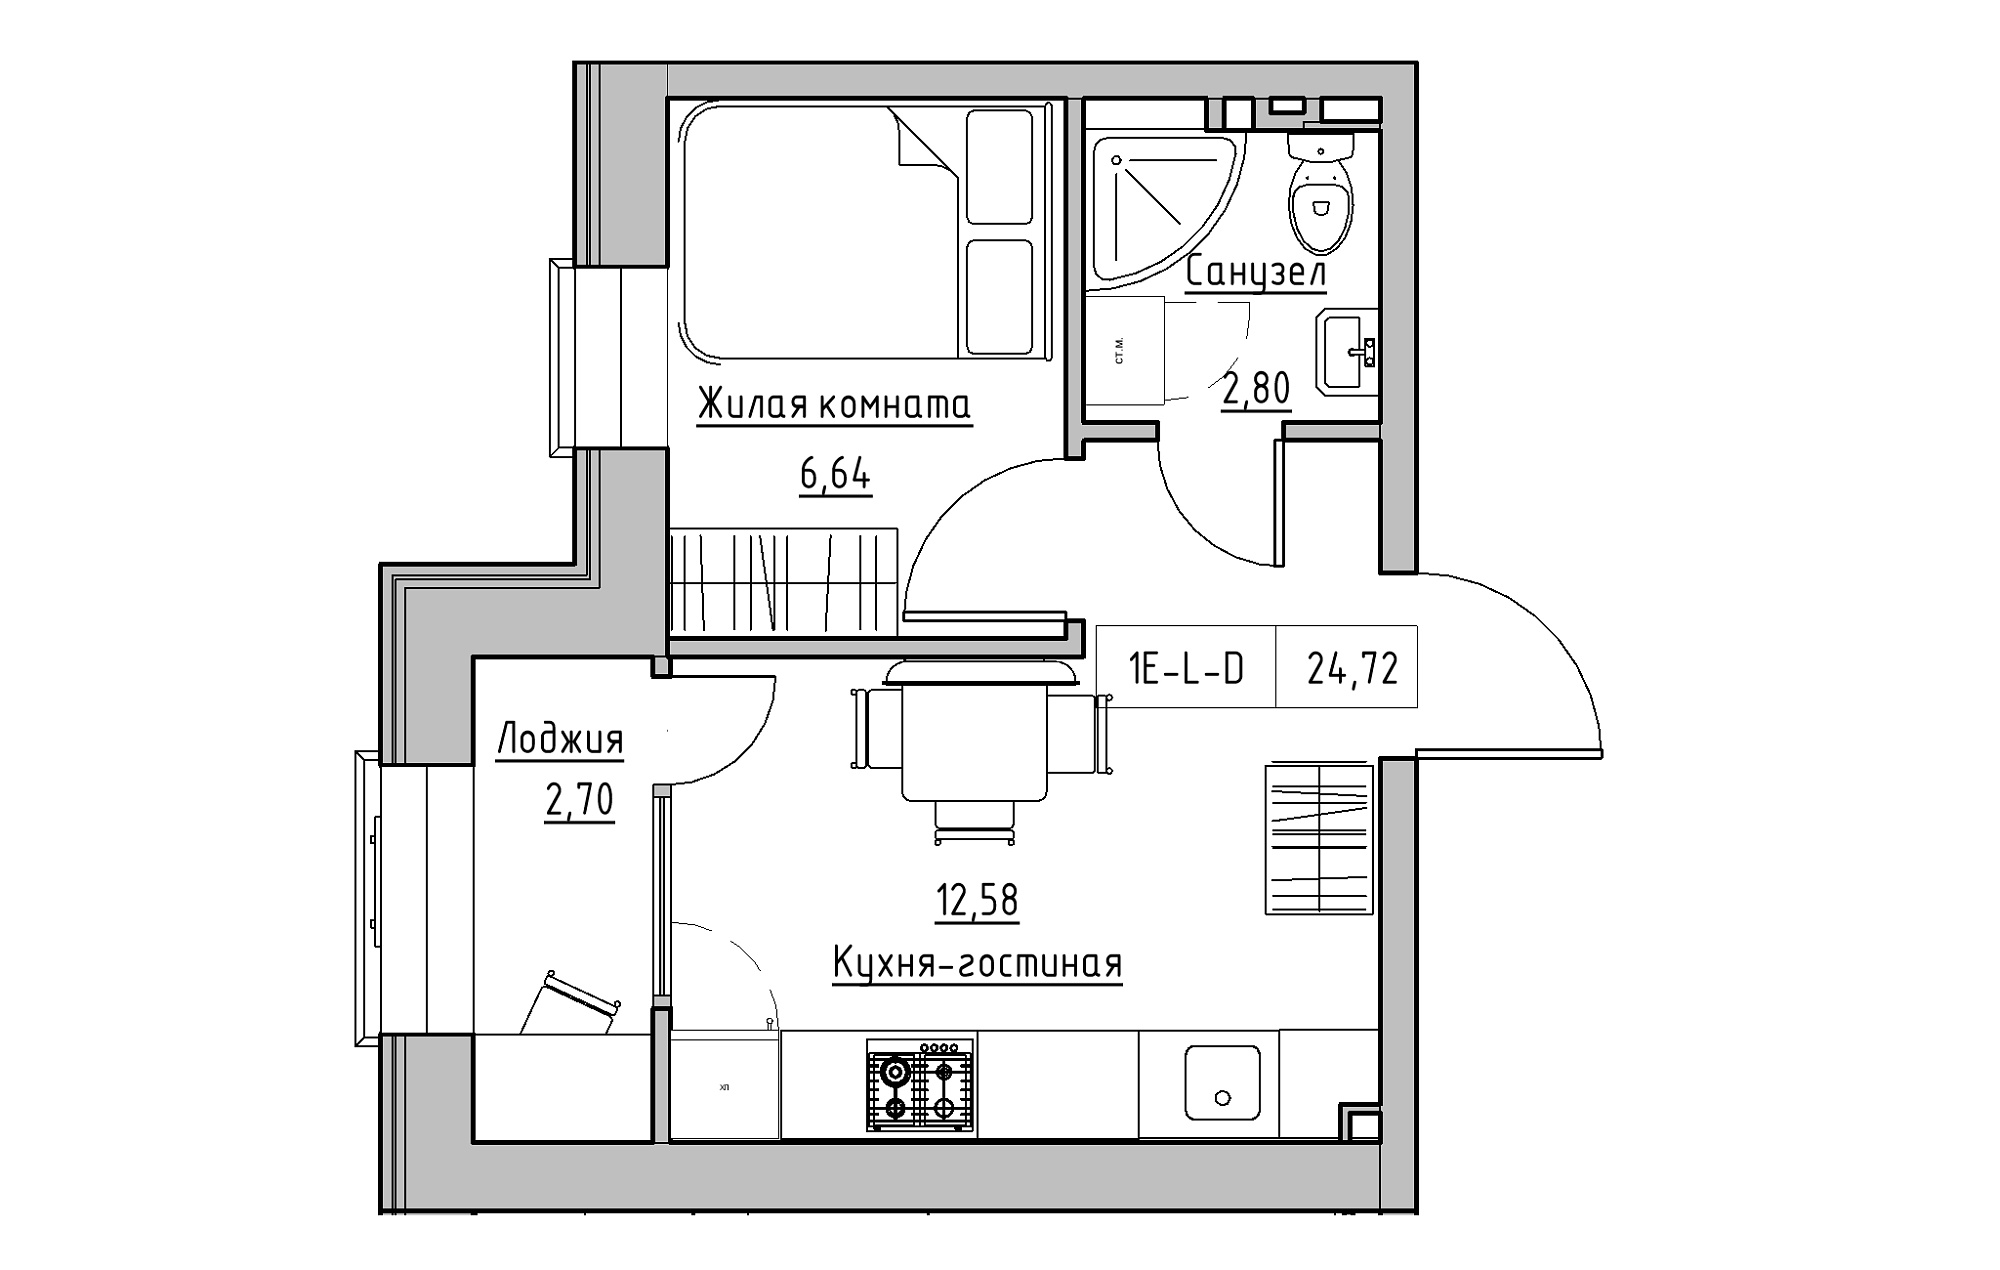 Планування 1-к квартира площею 24.72м2, KS-018-04/0013.